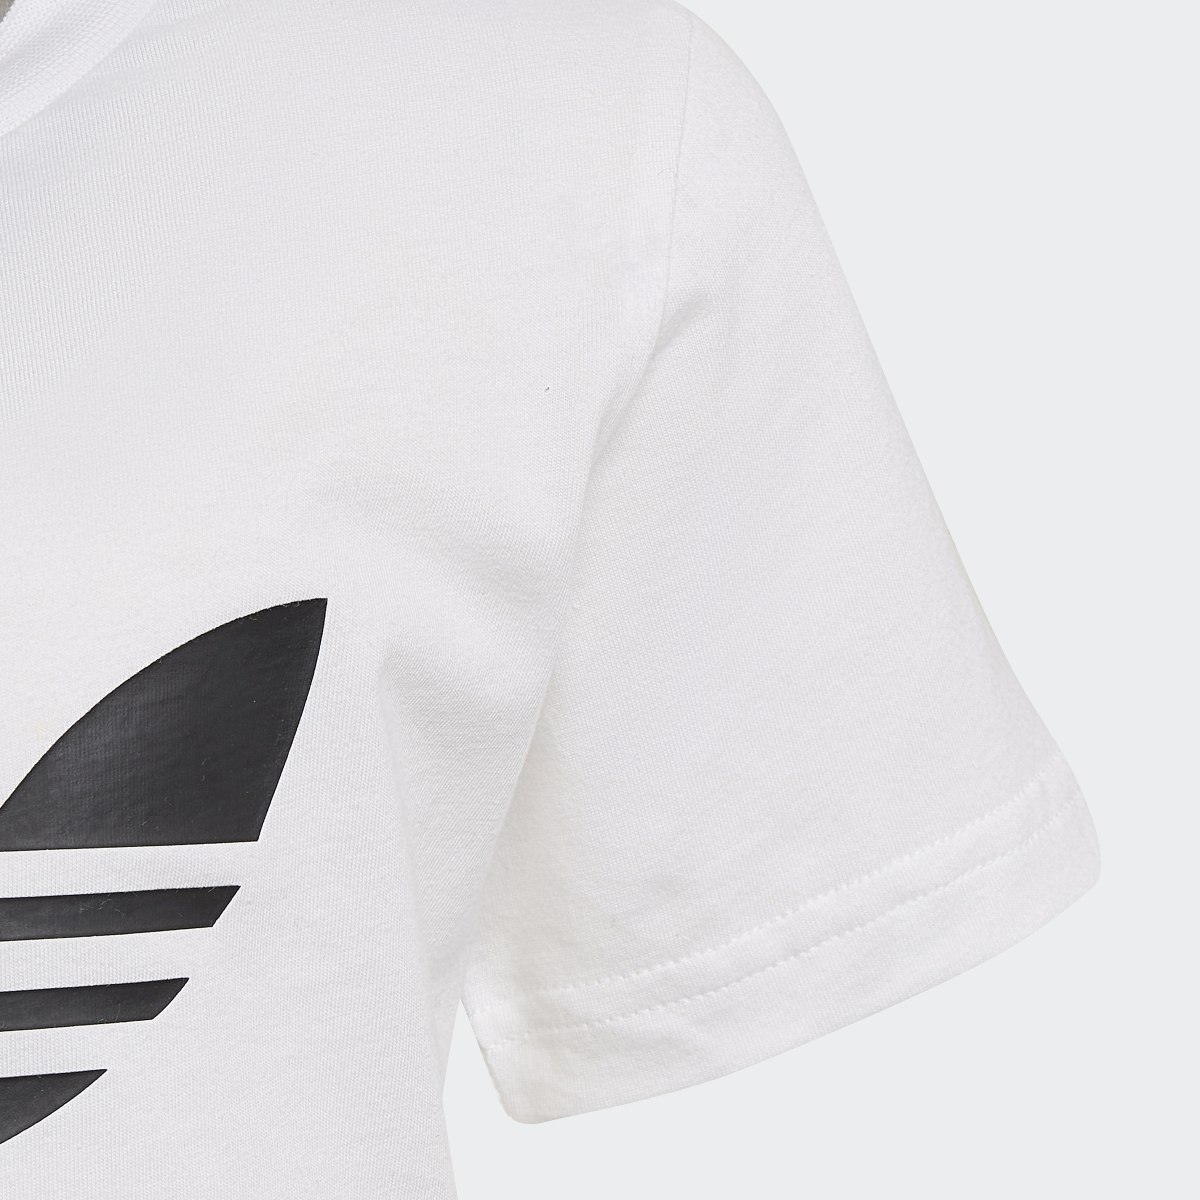 Adidas Adicolor Şort ve Tişört Takımı. 8